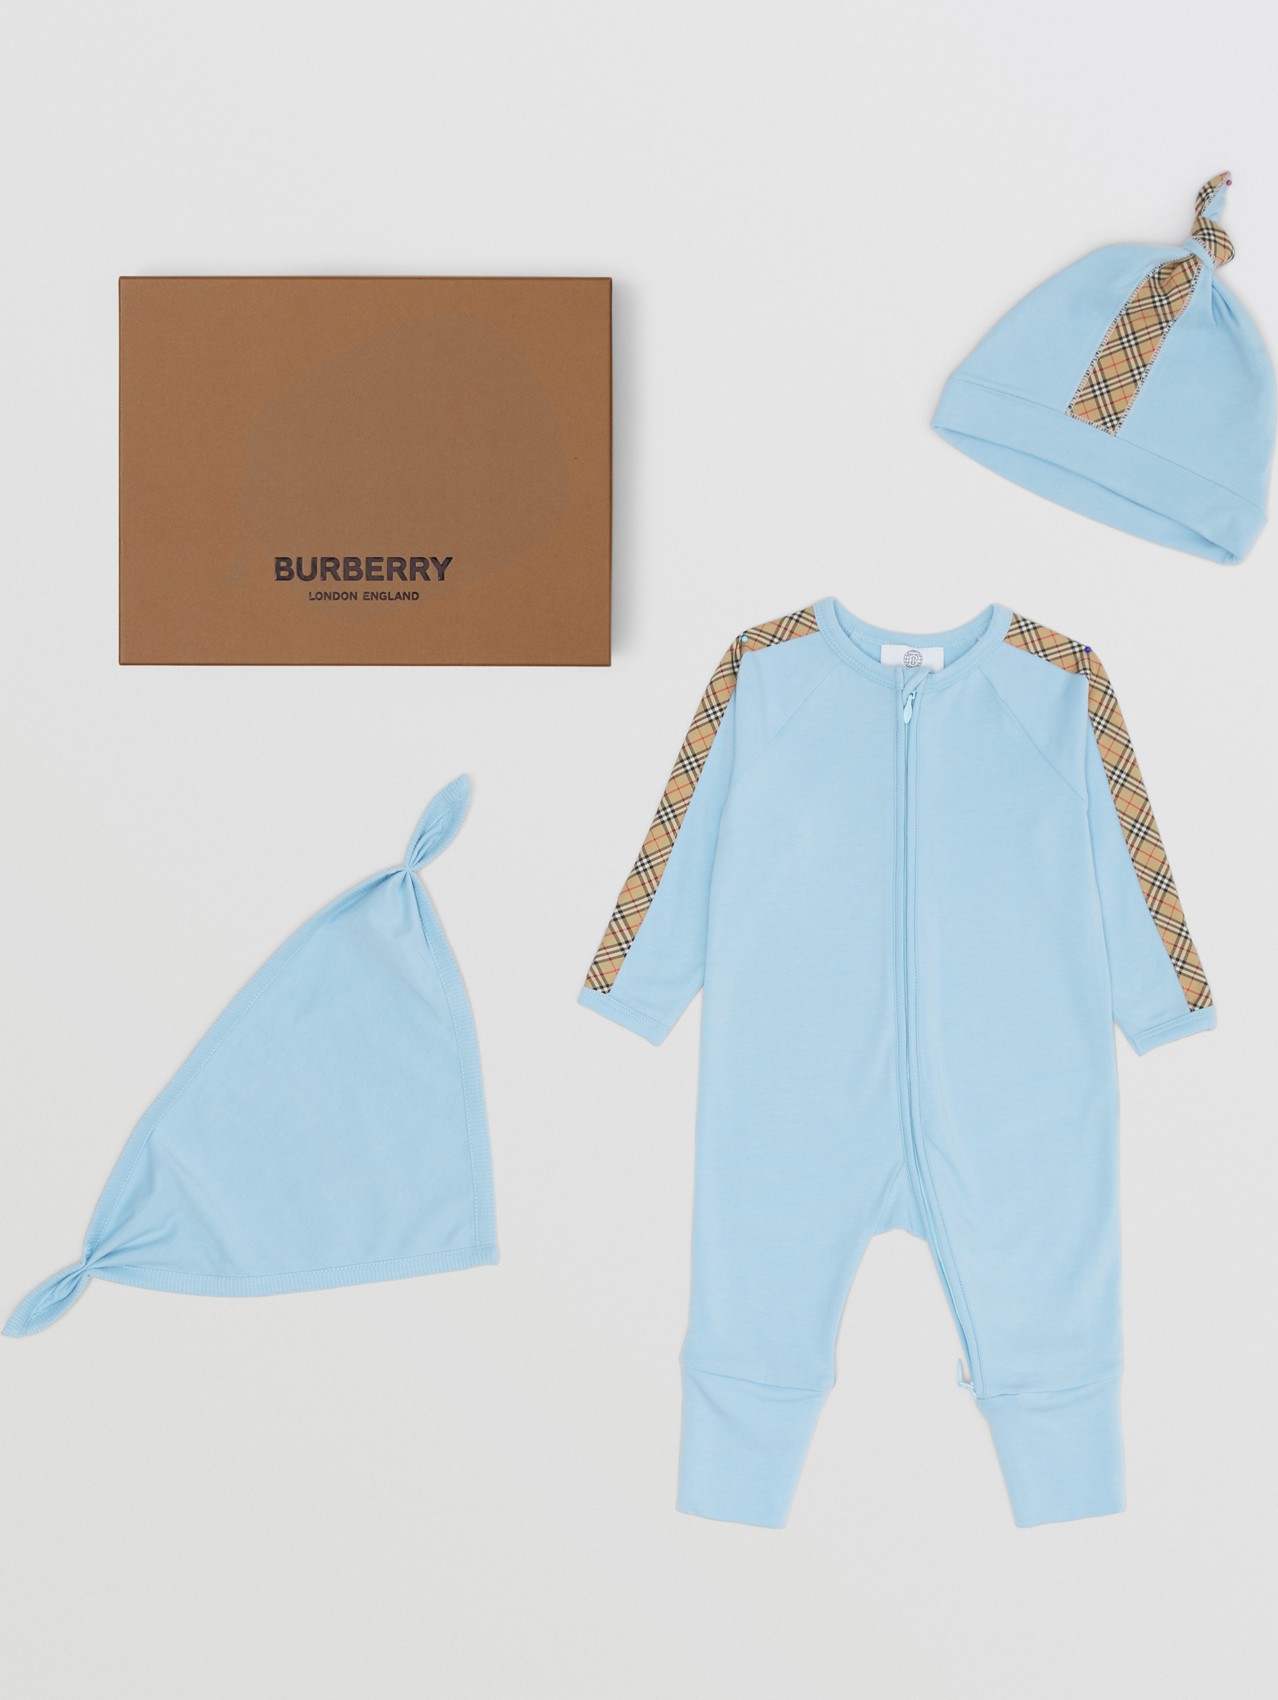 格纹装饰棉质三件套婴儿礼品套装 in 粉蓝色